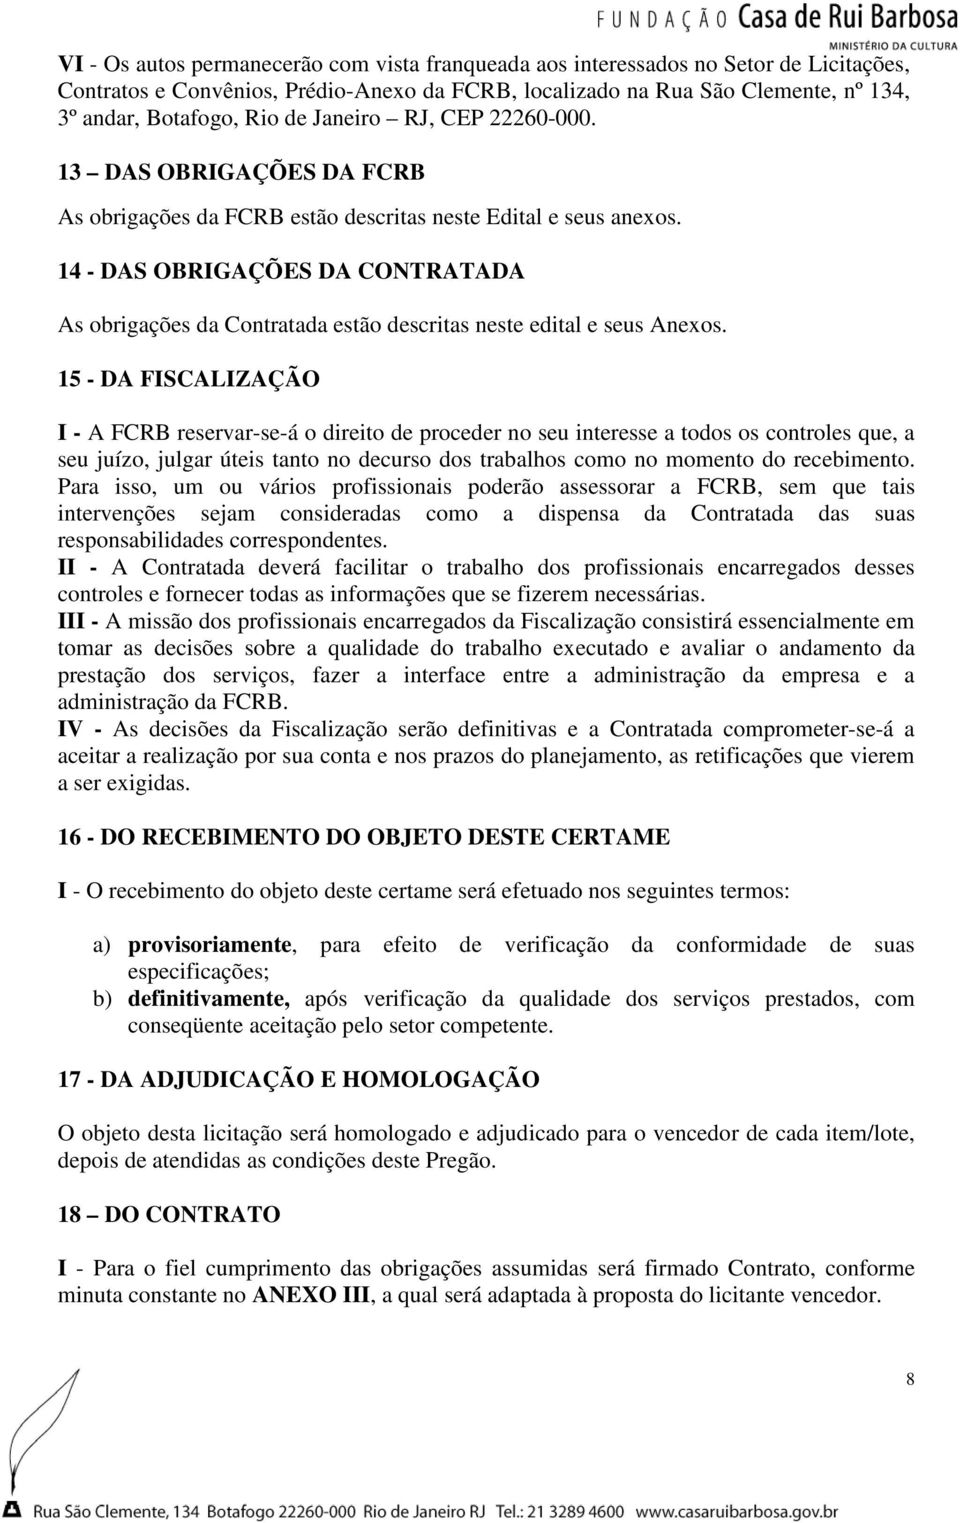 14 - DAS OBRIGAÇÕES DA CONTRATADA As obrigações da Contratada estão descritas neste edital e seus Anexos.